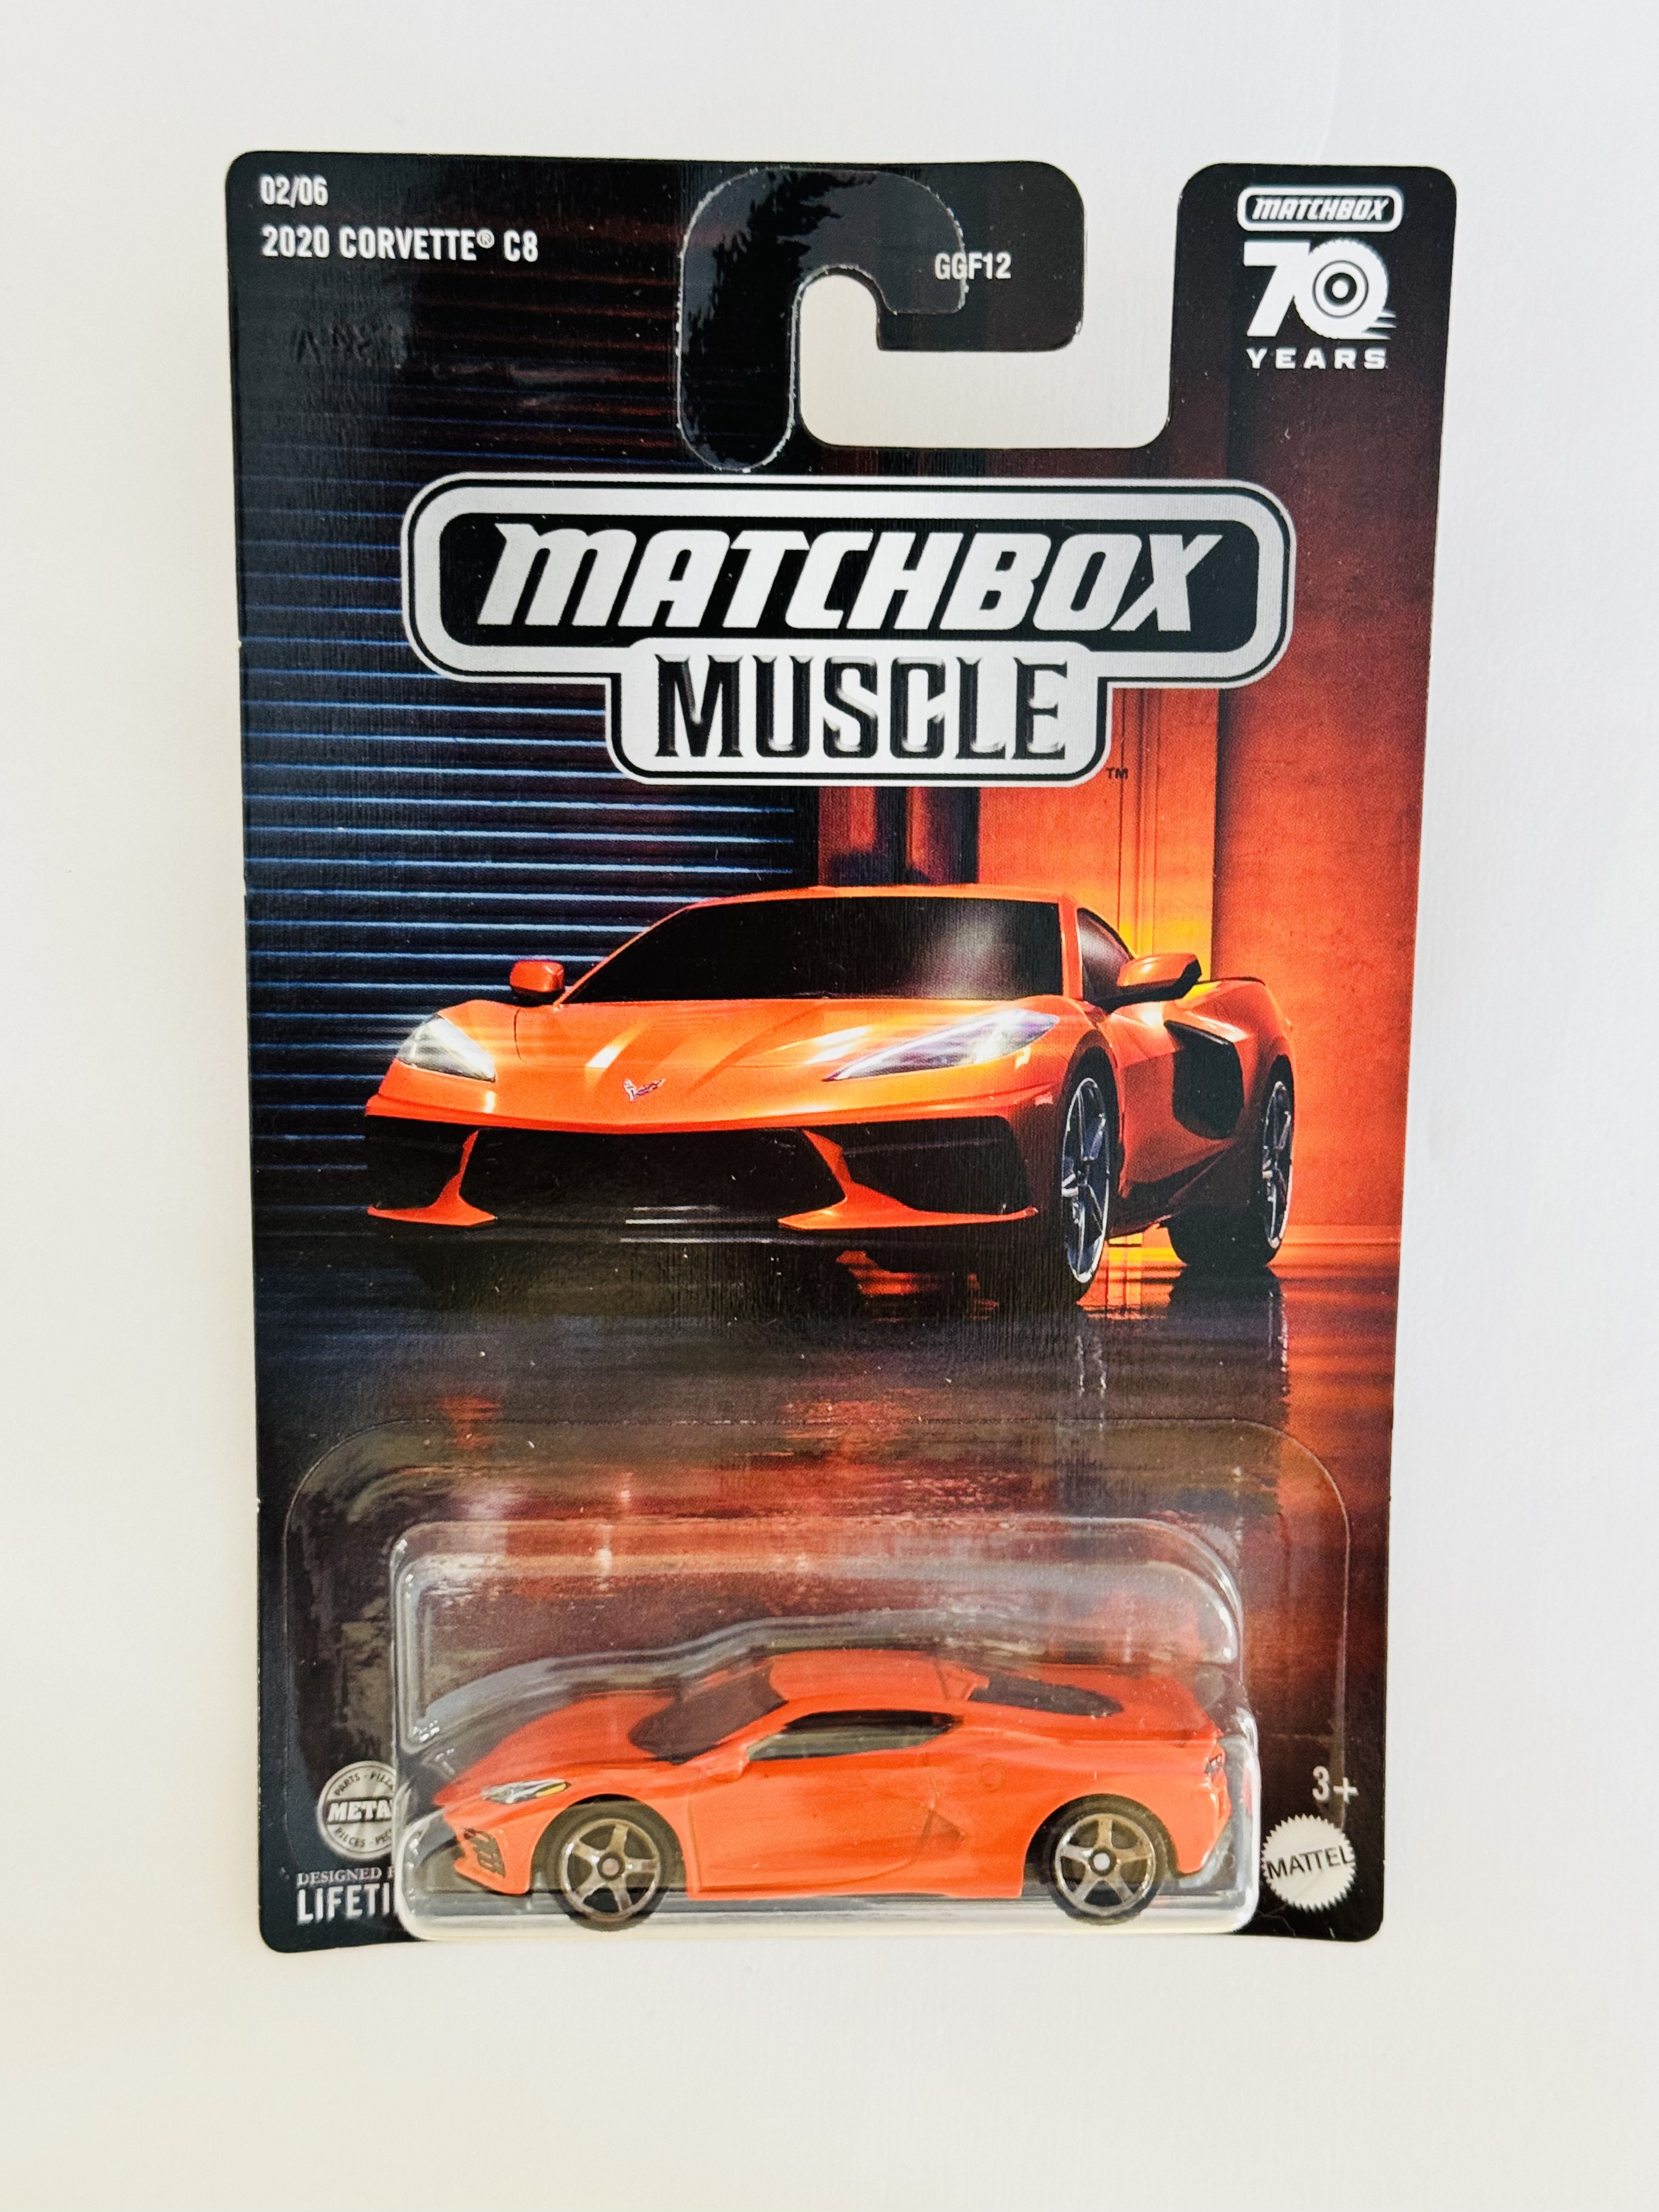 Matchbox Muscle 2020 Corvette C8